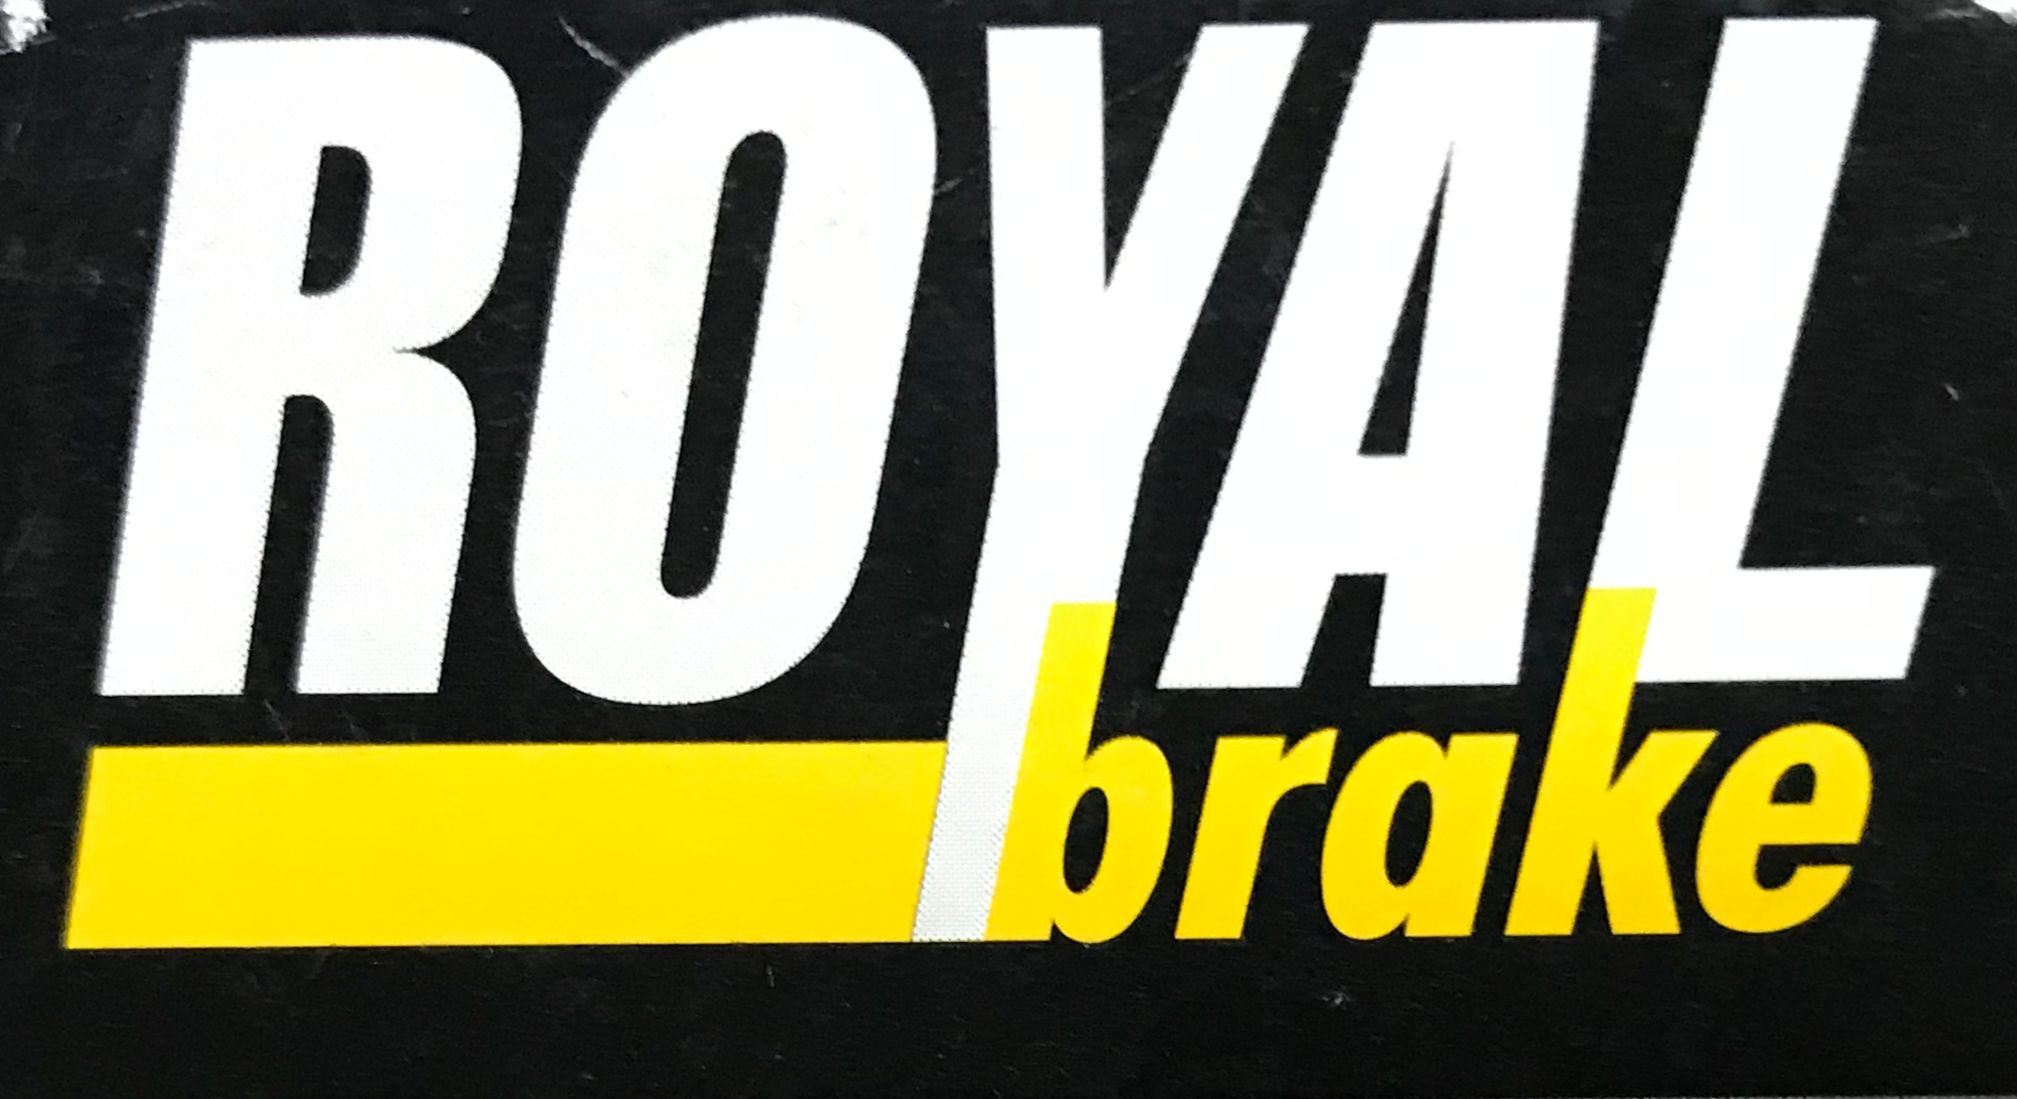 ROYAL BRAKE